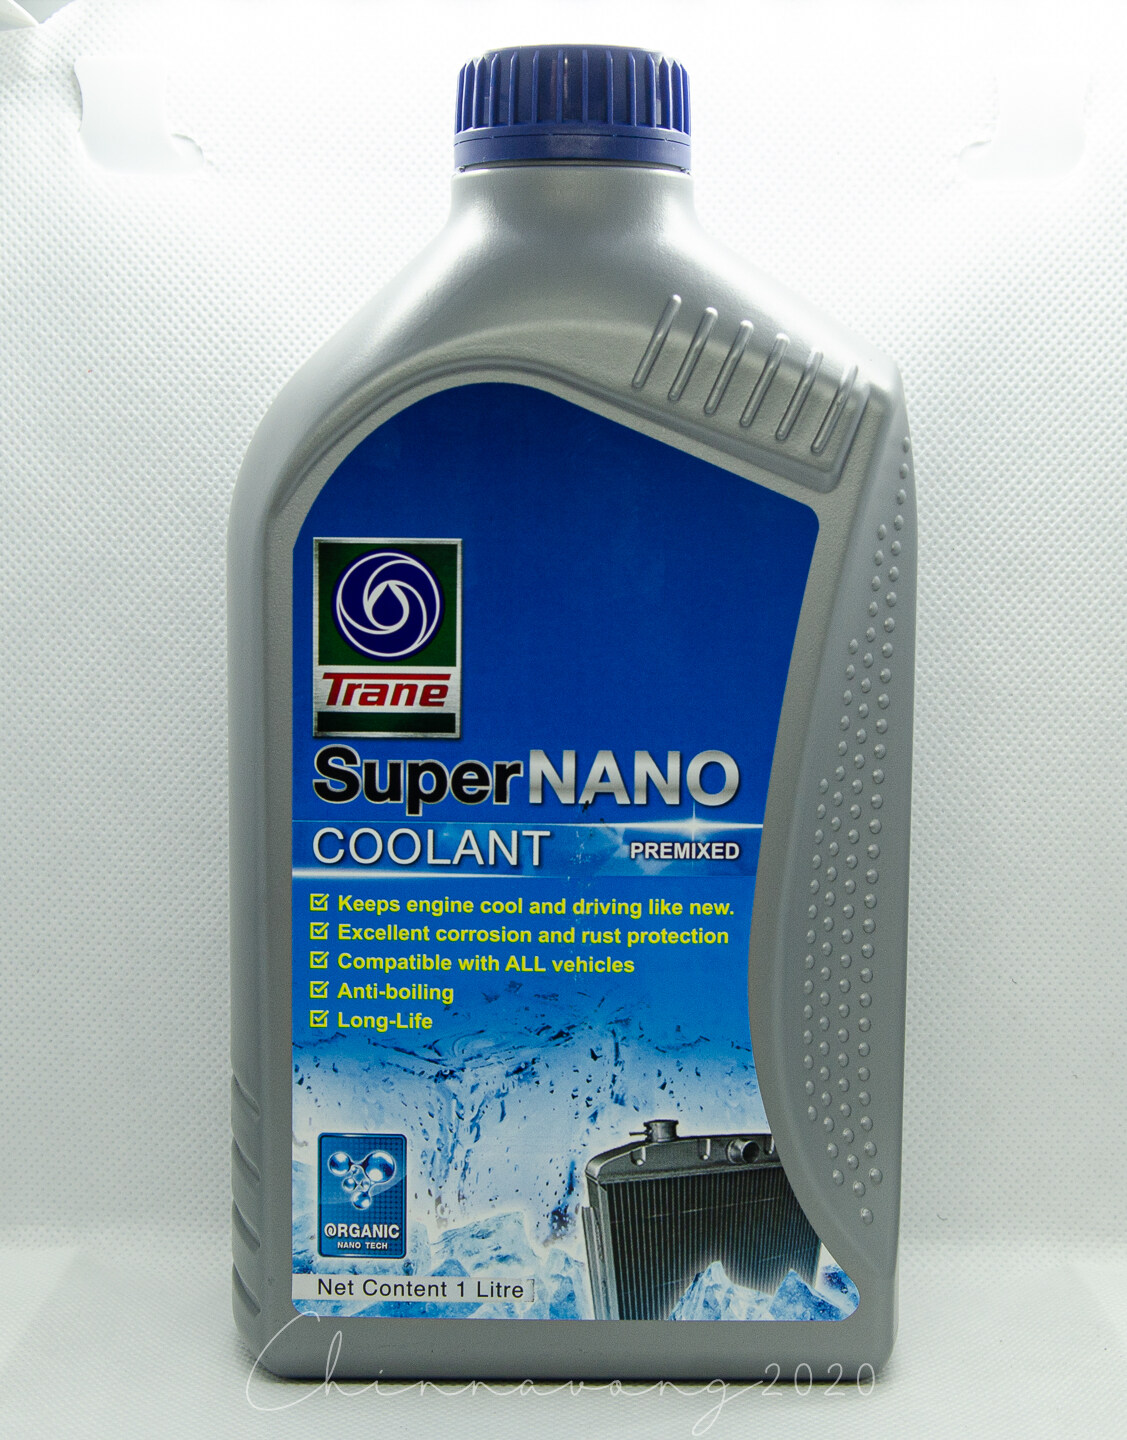 น้ำยาหม้อน้ำ น้ำยาหล่อเย็น Coolant Trane Super Nano (สีฟ้า) 1ลิตร